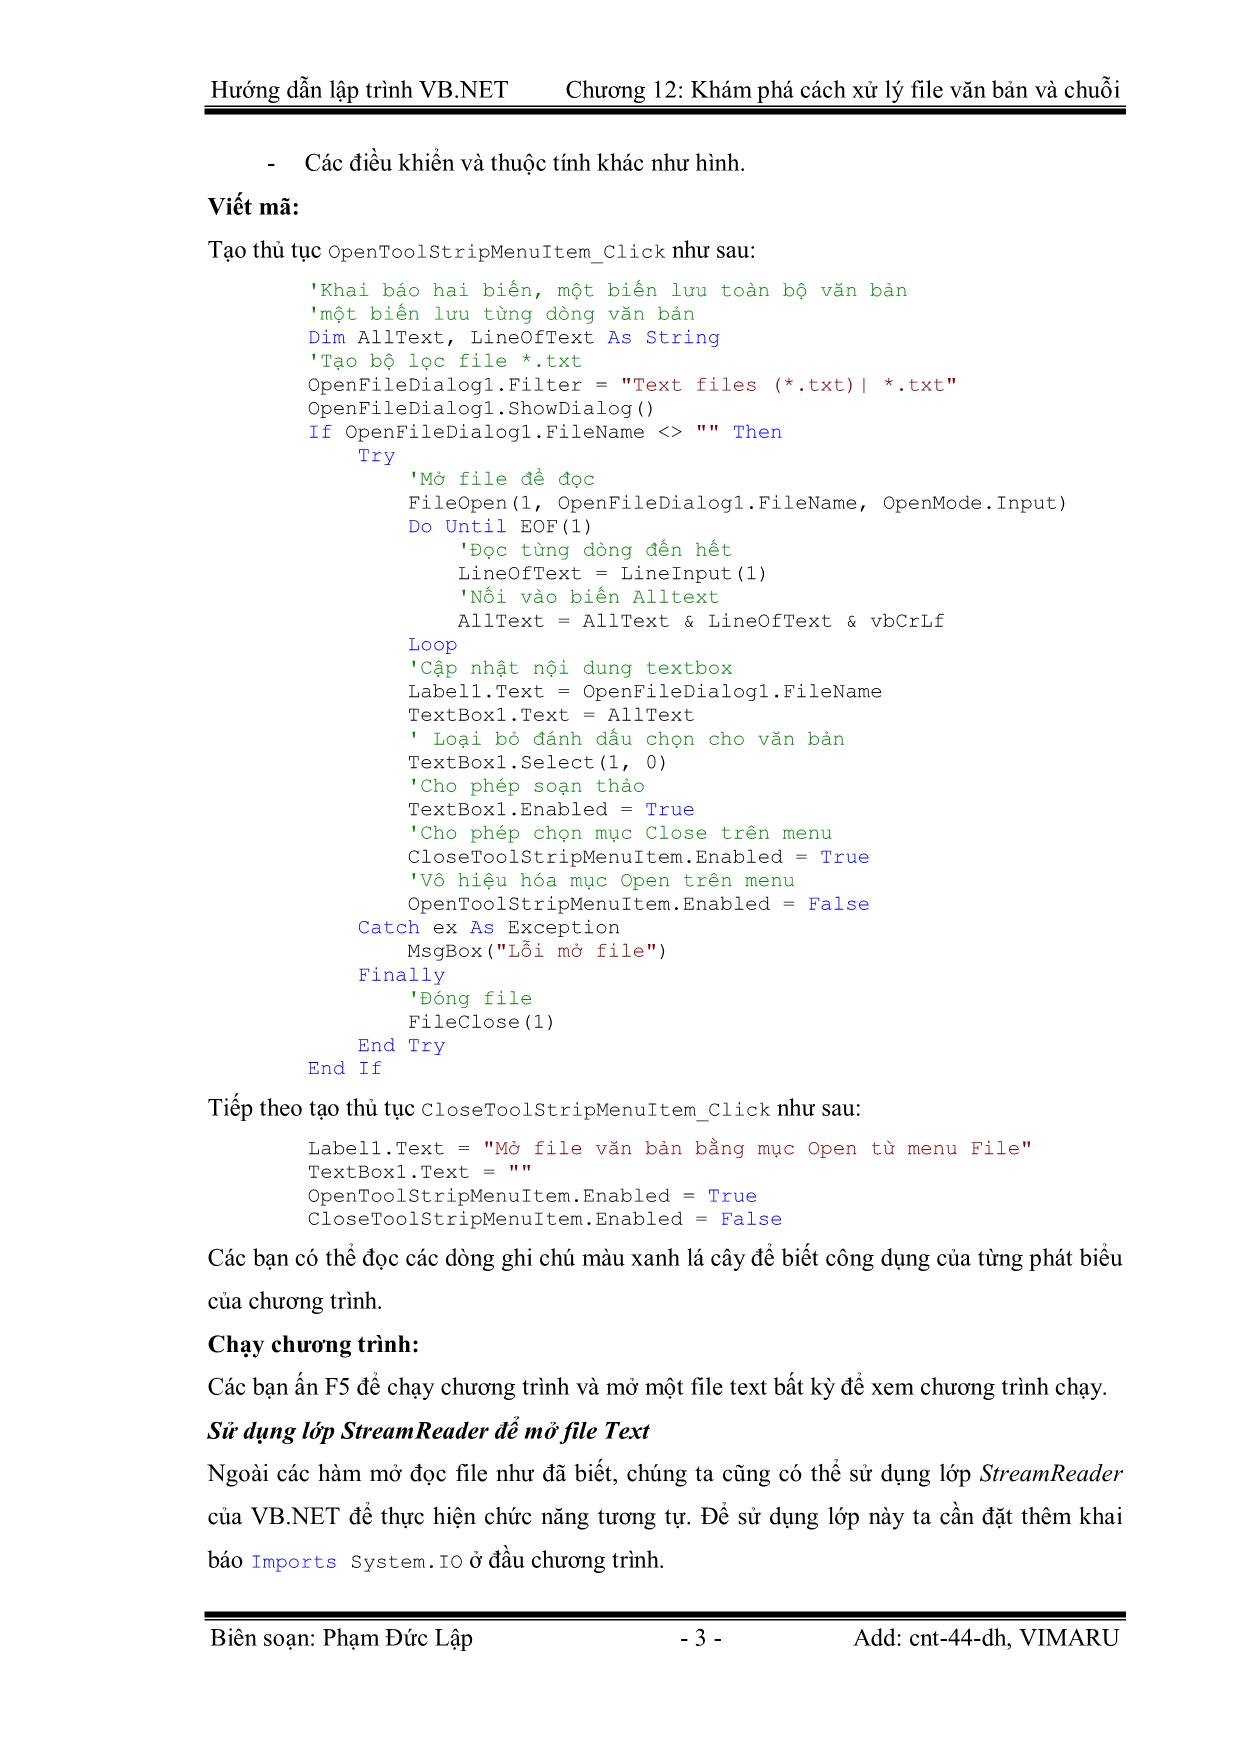 Giáo trình Hướng dẫn lập trình VB.NET - Chương 12: Khám phá cách xử lý File Text và chuỗi - Phạm Đức Lập trang 3